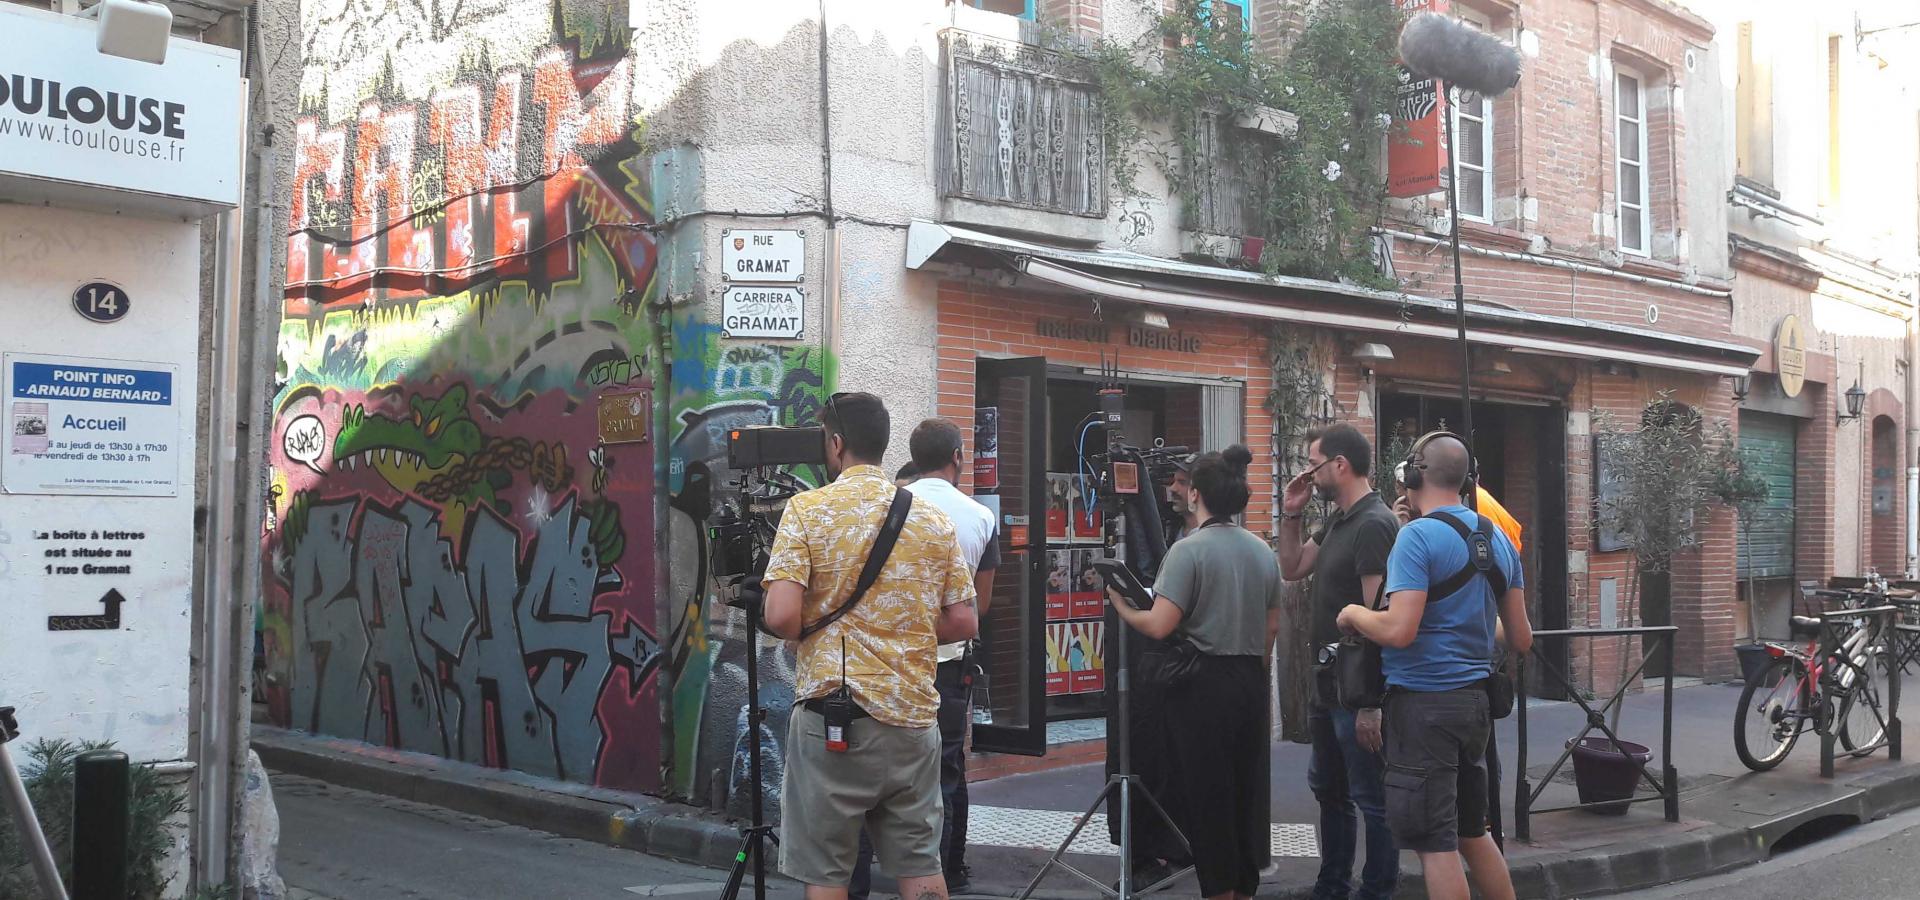 Décor tournage : Rue Gramat, graffitis